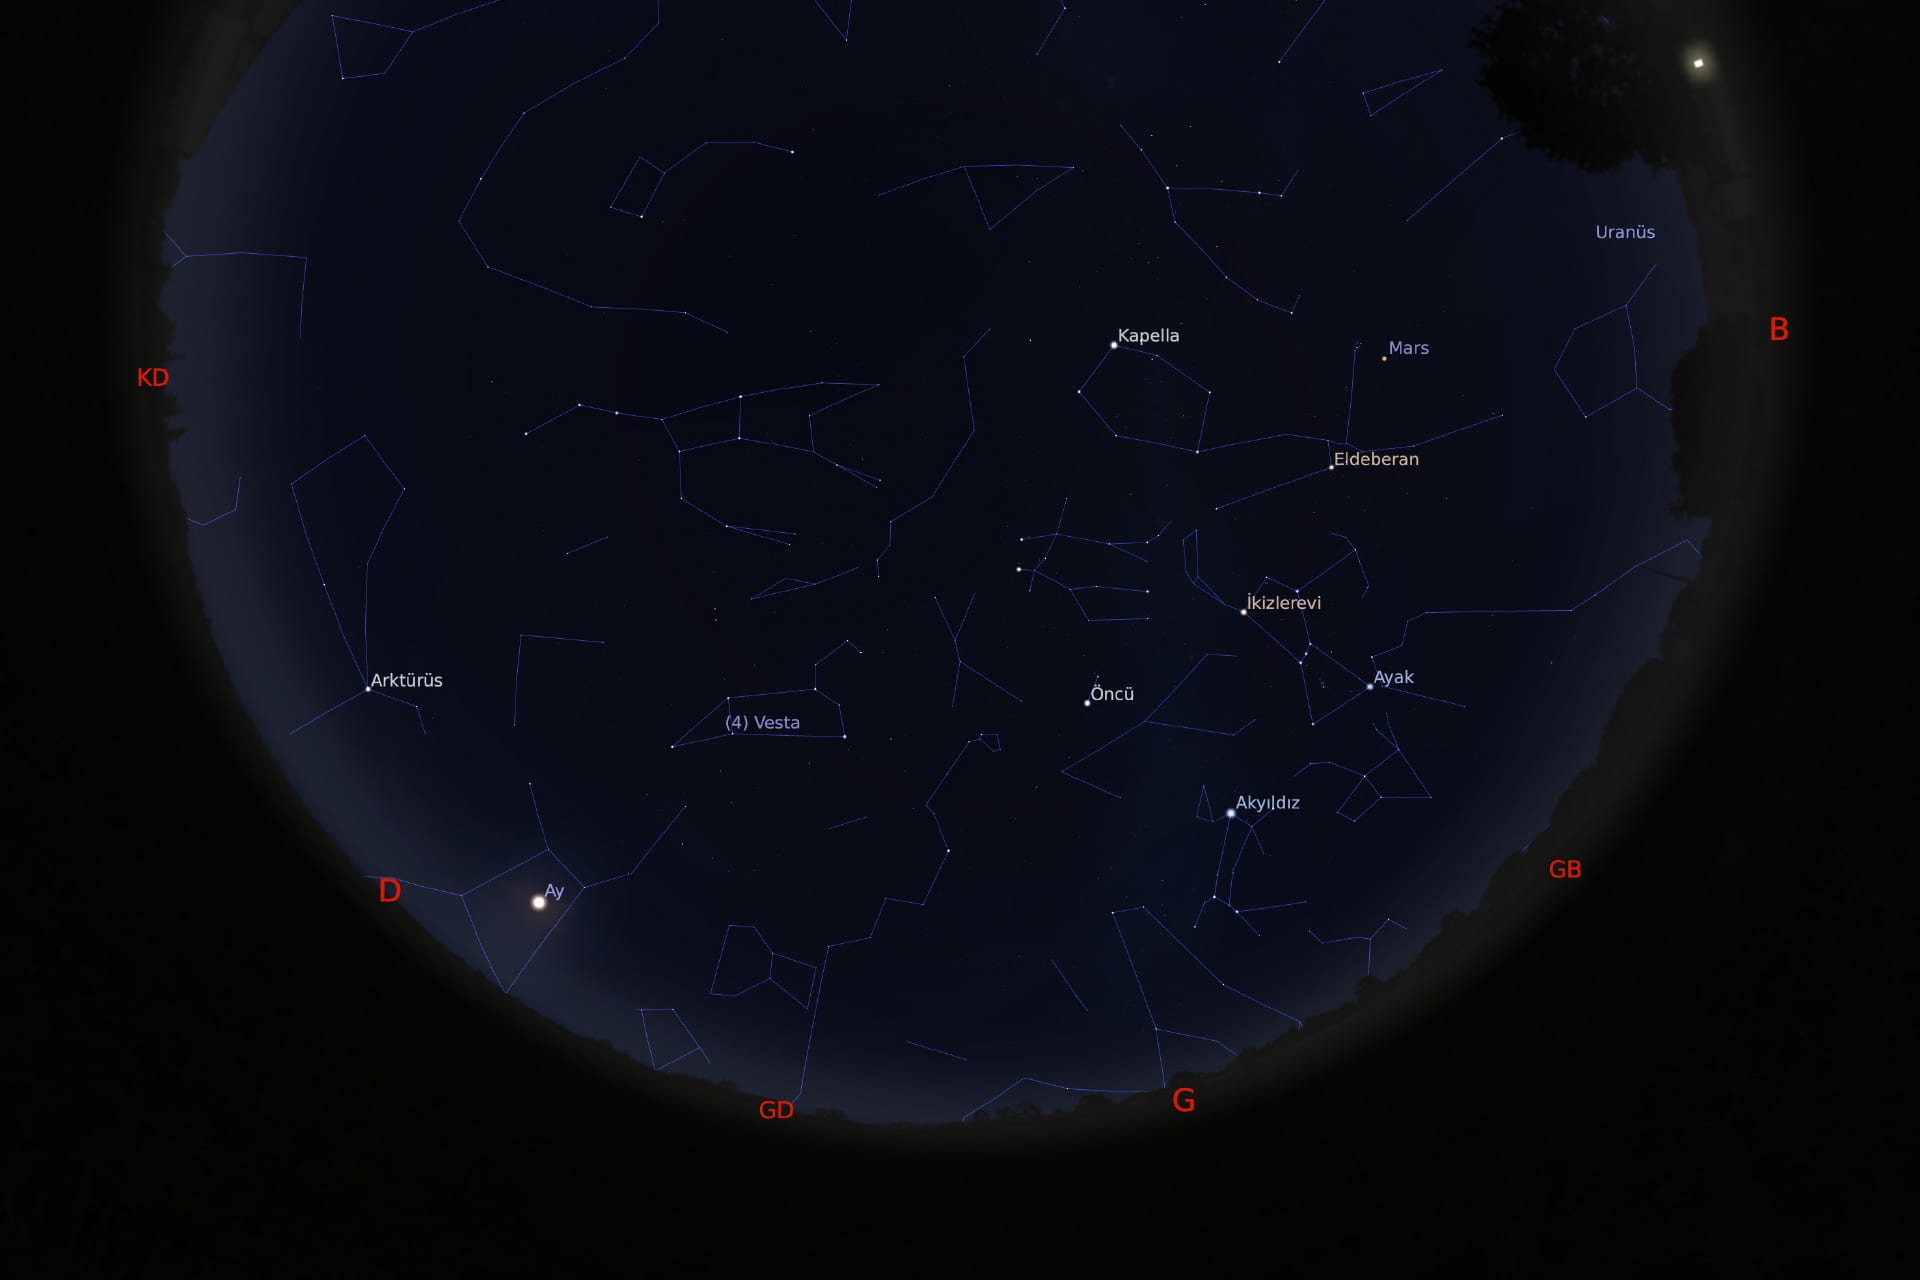 1 Mart 2021 - saat 22:30'daki gökyüzü görüntüsü